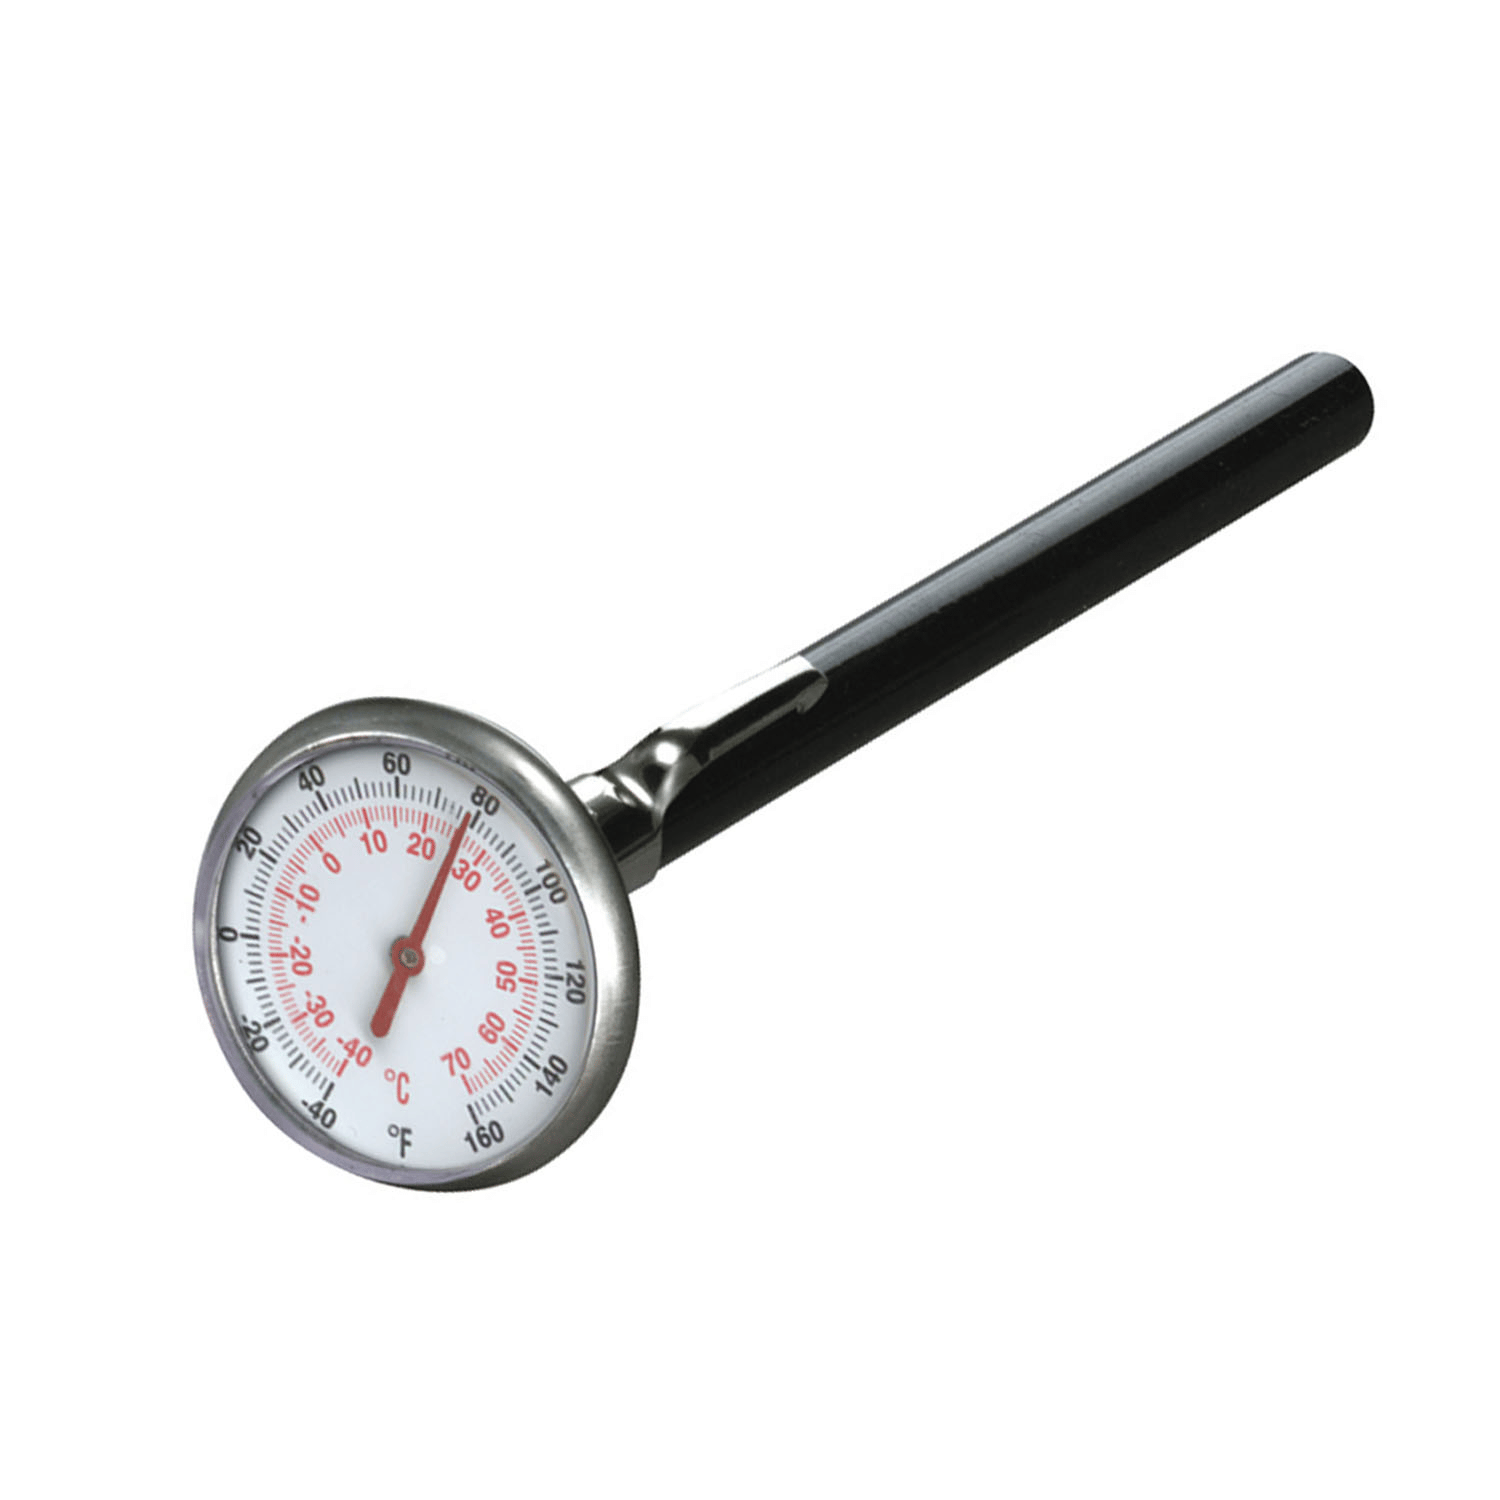 Taschen-Thermometer, Zifferblatt Masse 35 (-40 bis 70 ° C)